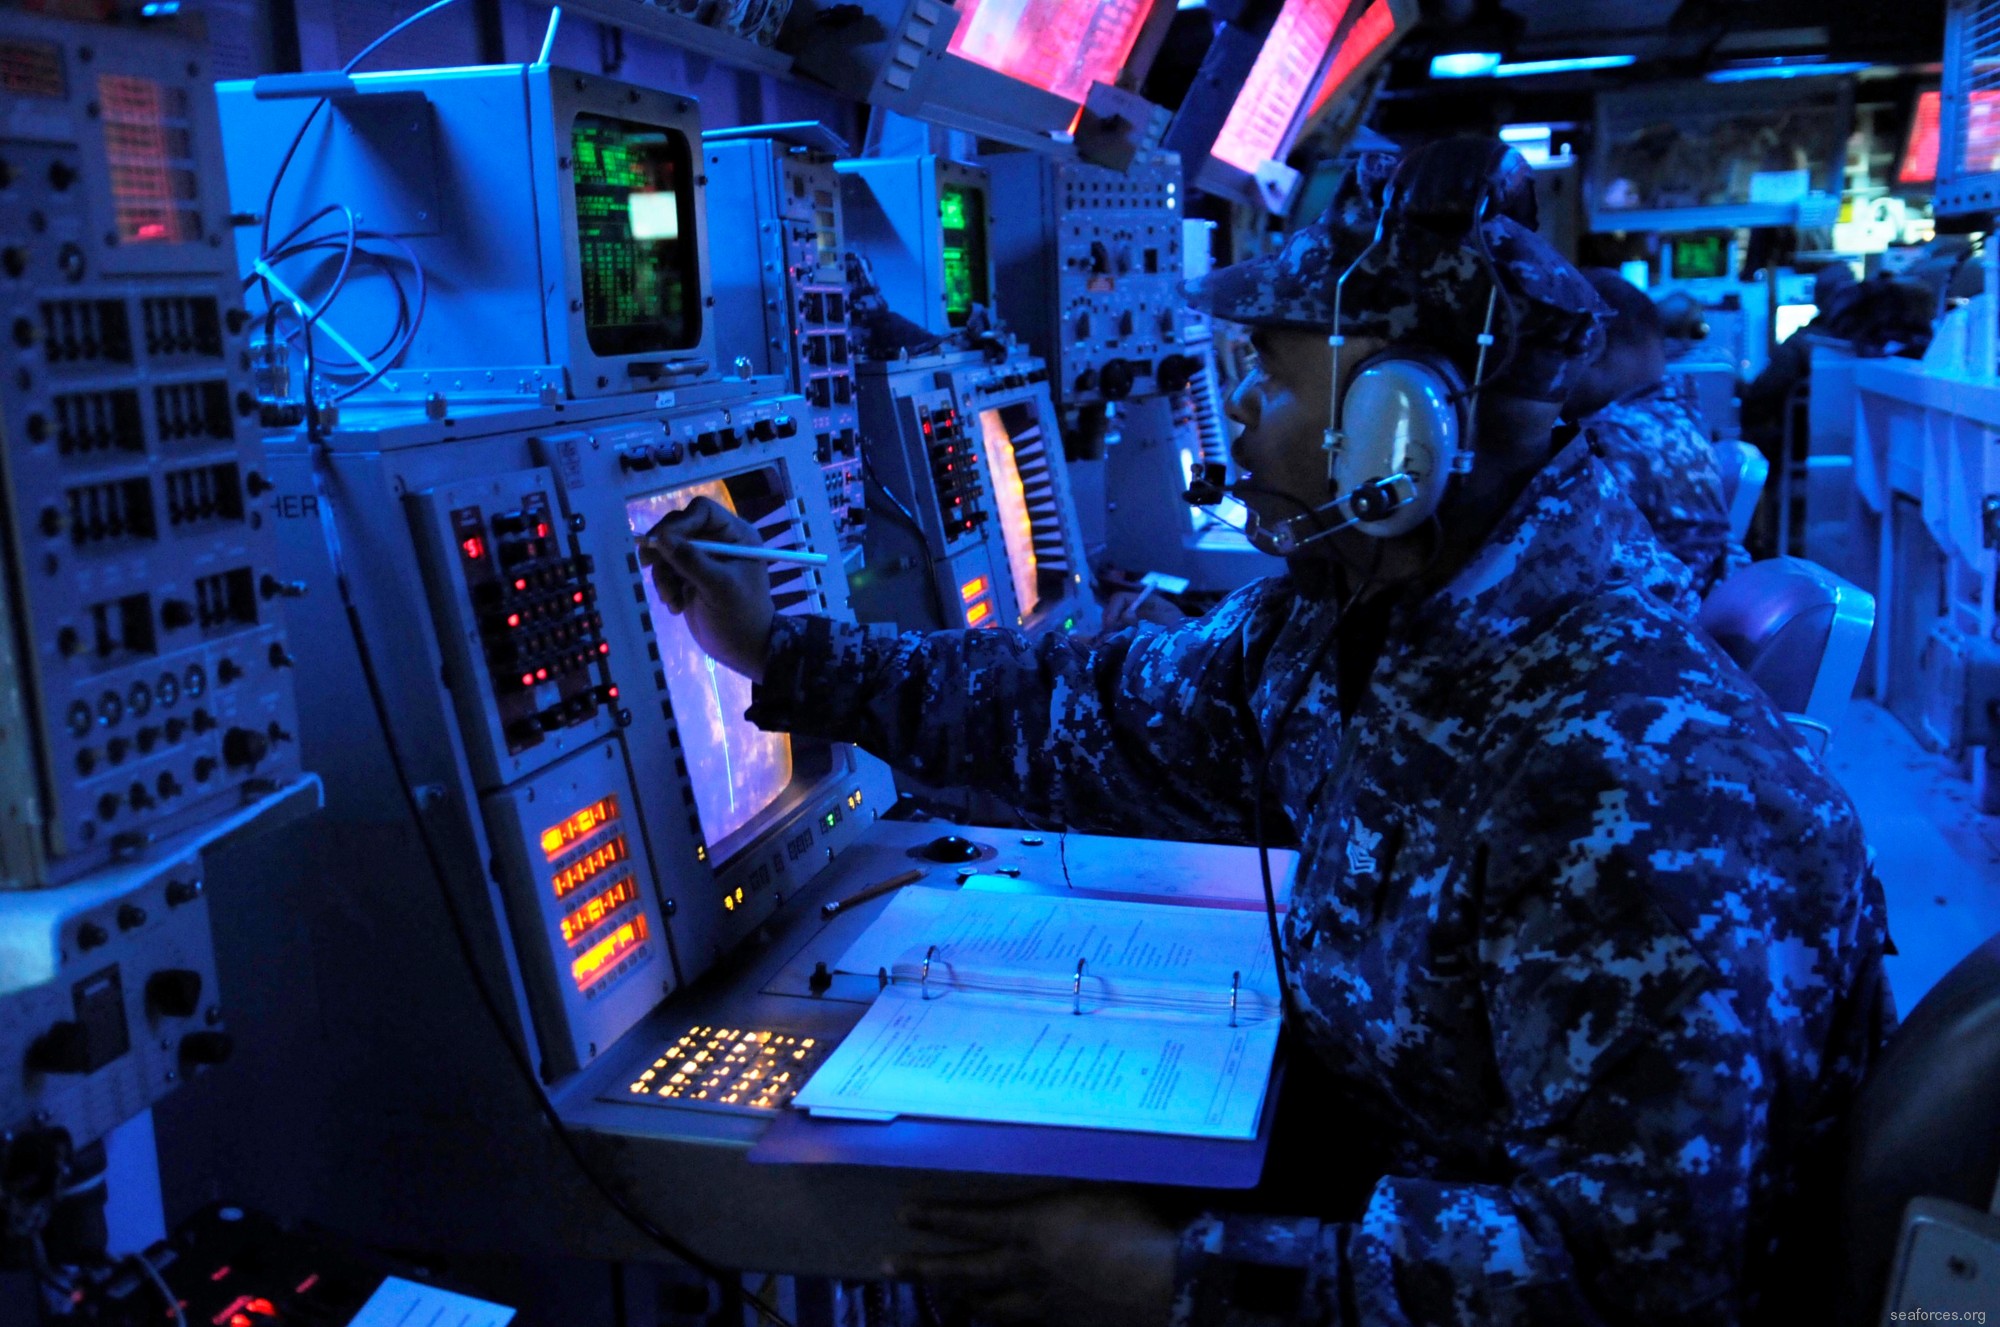 ddg-63 uss stethem guided missile destroyer 36 combat information center cic